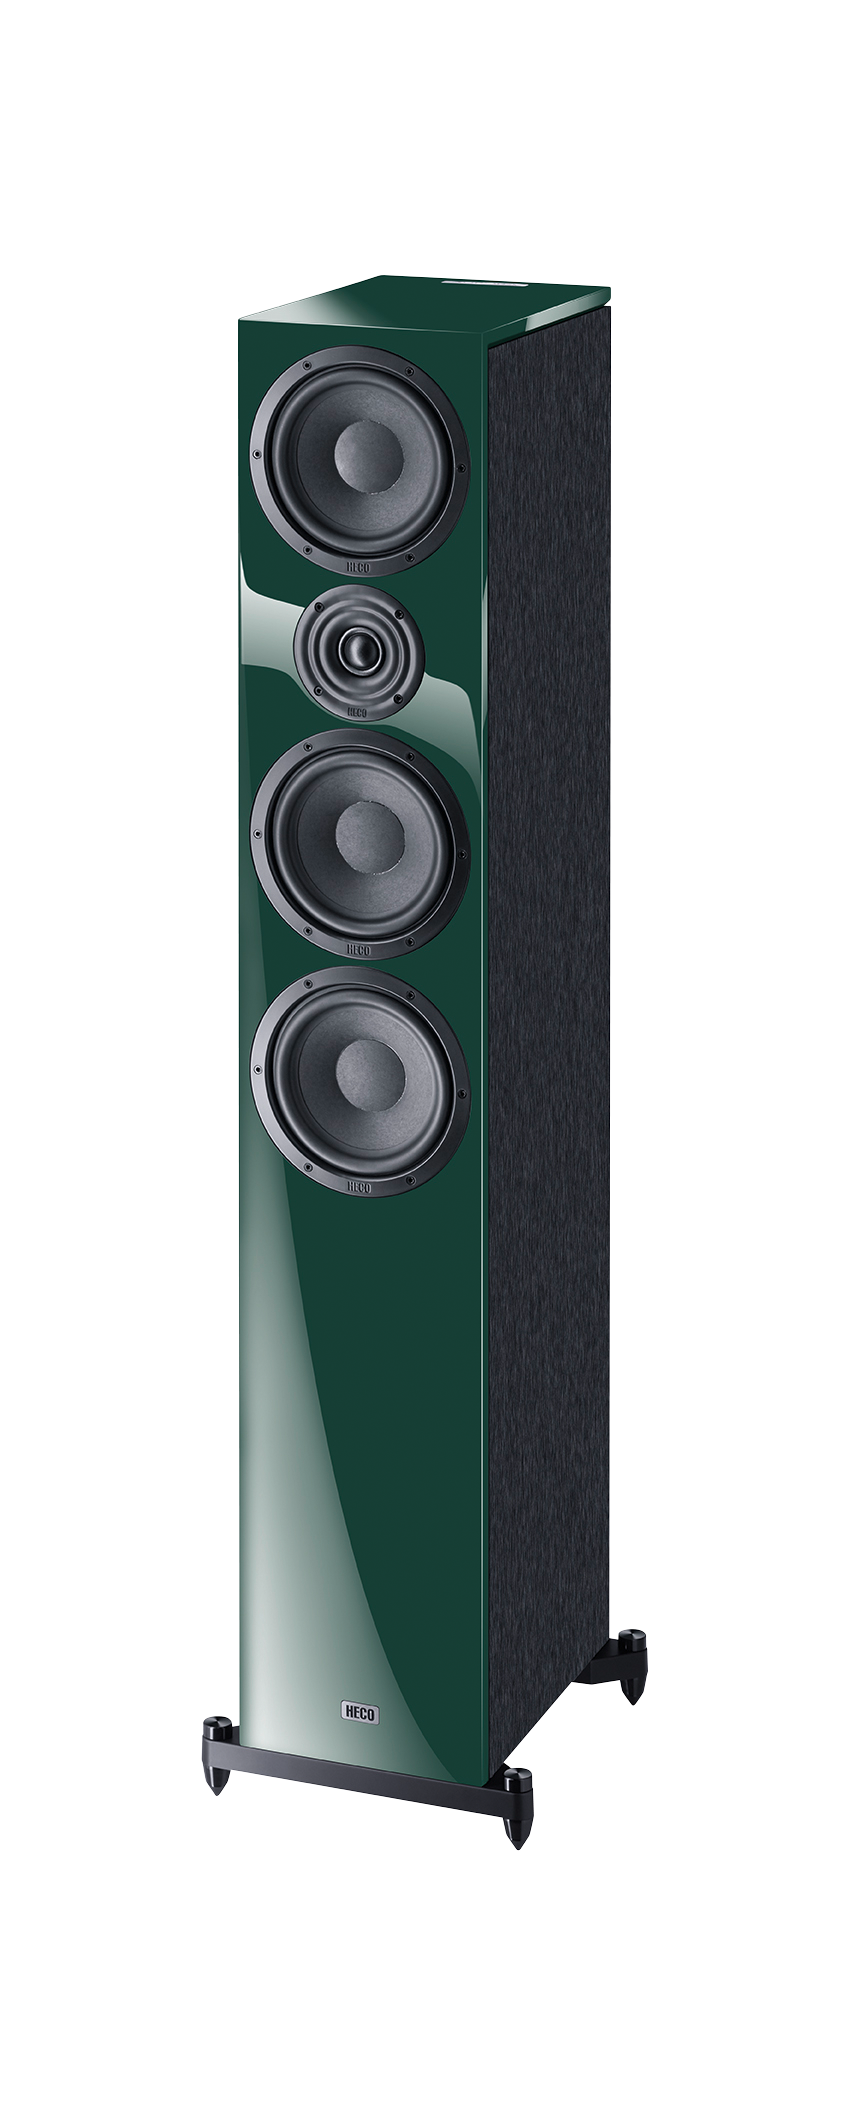 Aurora 700 Colors, Elegant 3-way hi-fi speakers in a fascinating range of colors